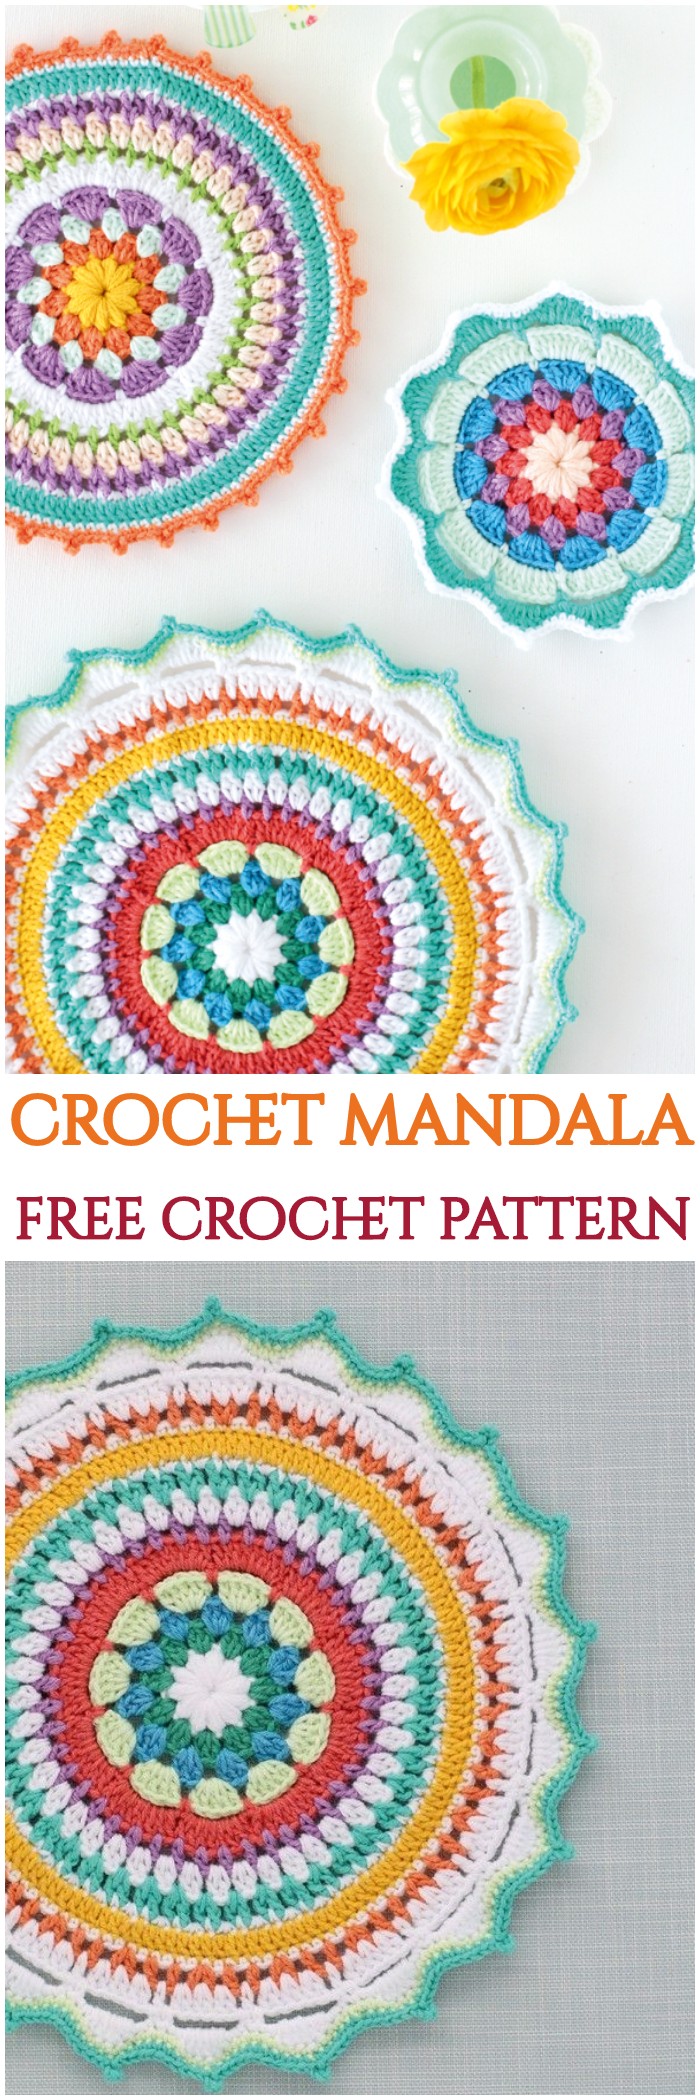 Crochet Pattern For Mandala